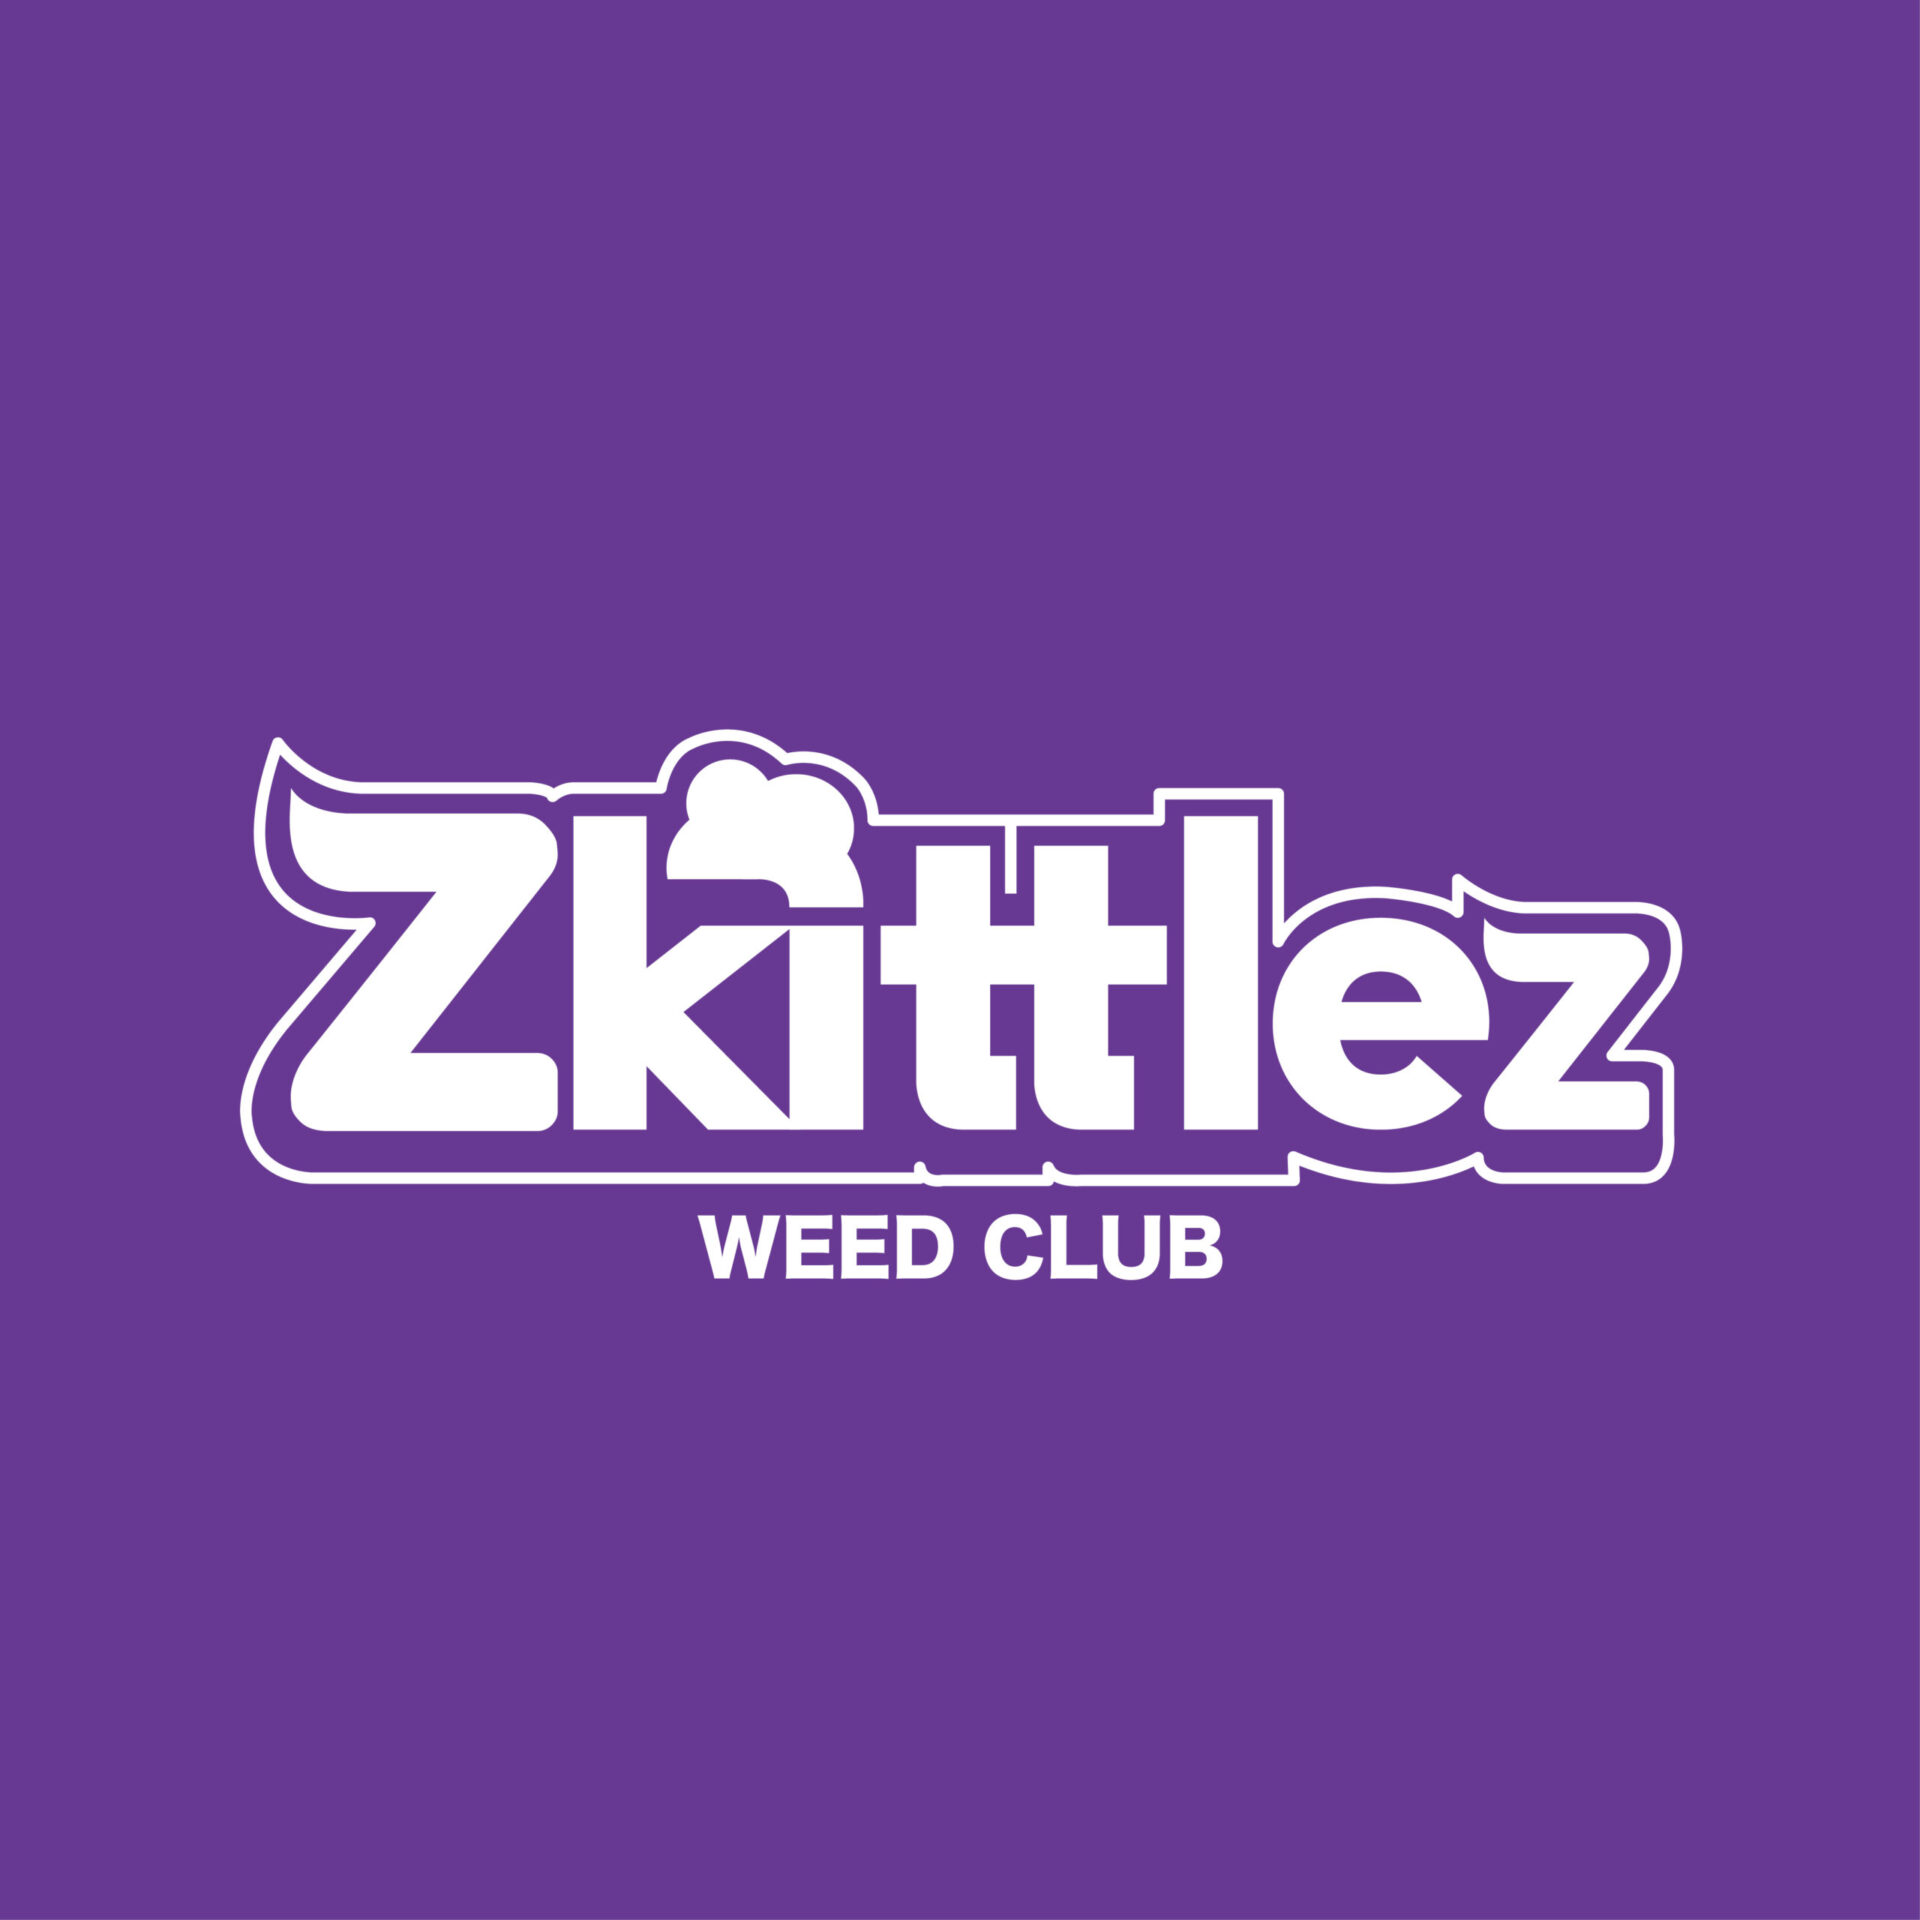 Zkittlez-logo-17-scaled